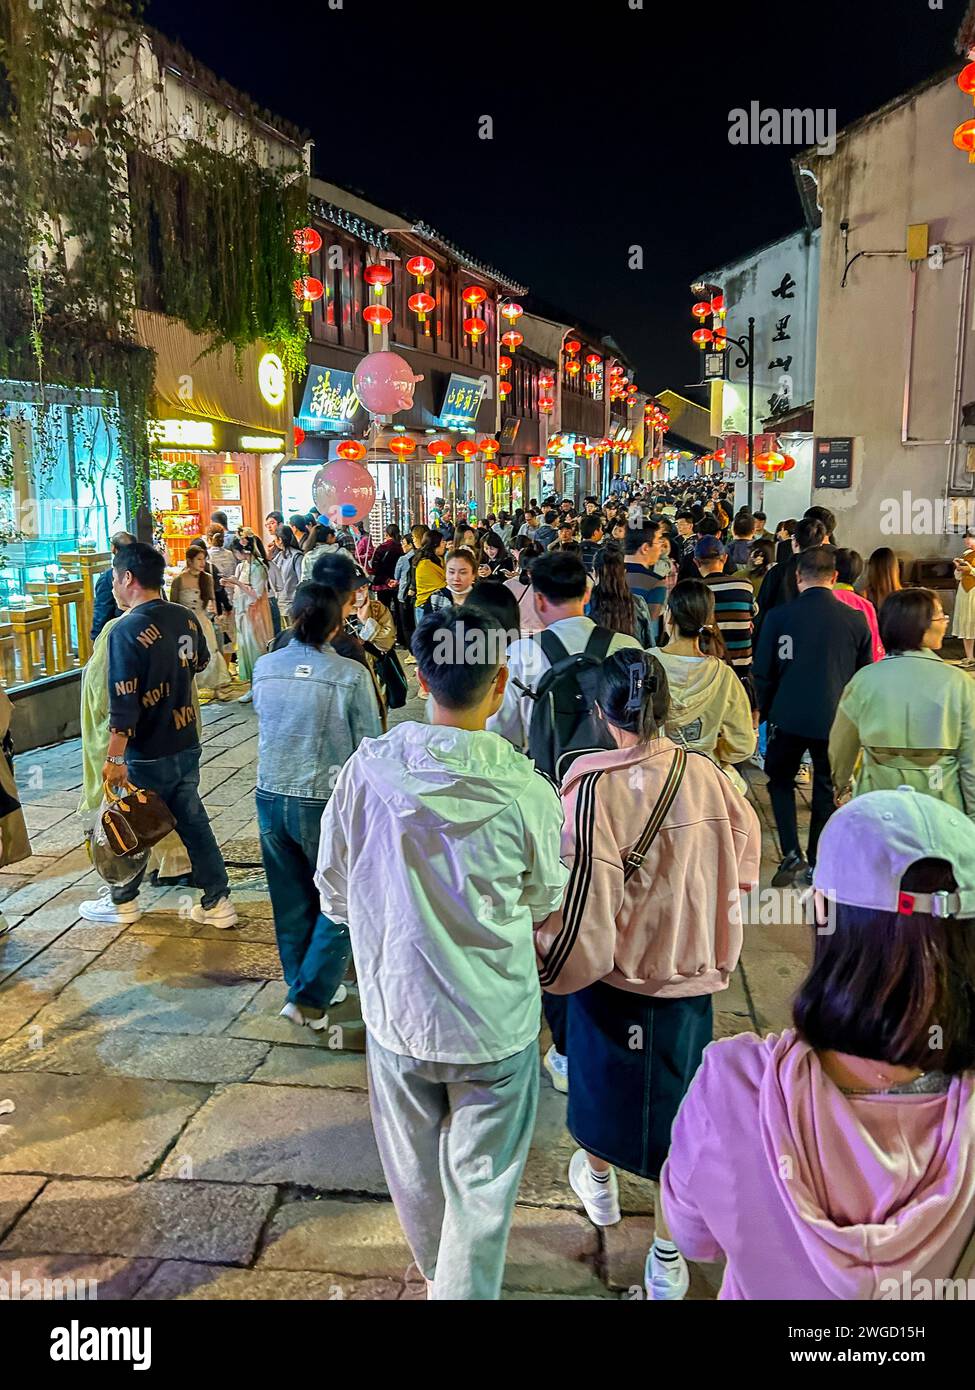 Suzhou, China, China vieja, centro de la ciudad vieja china, escenas de la calle, gente de la multitud, turistas chinos, visitando, Foto de stock